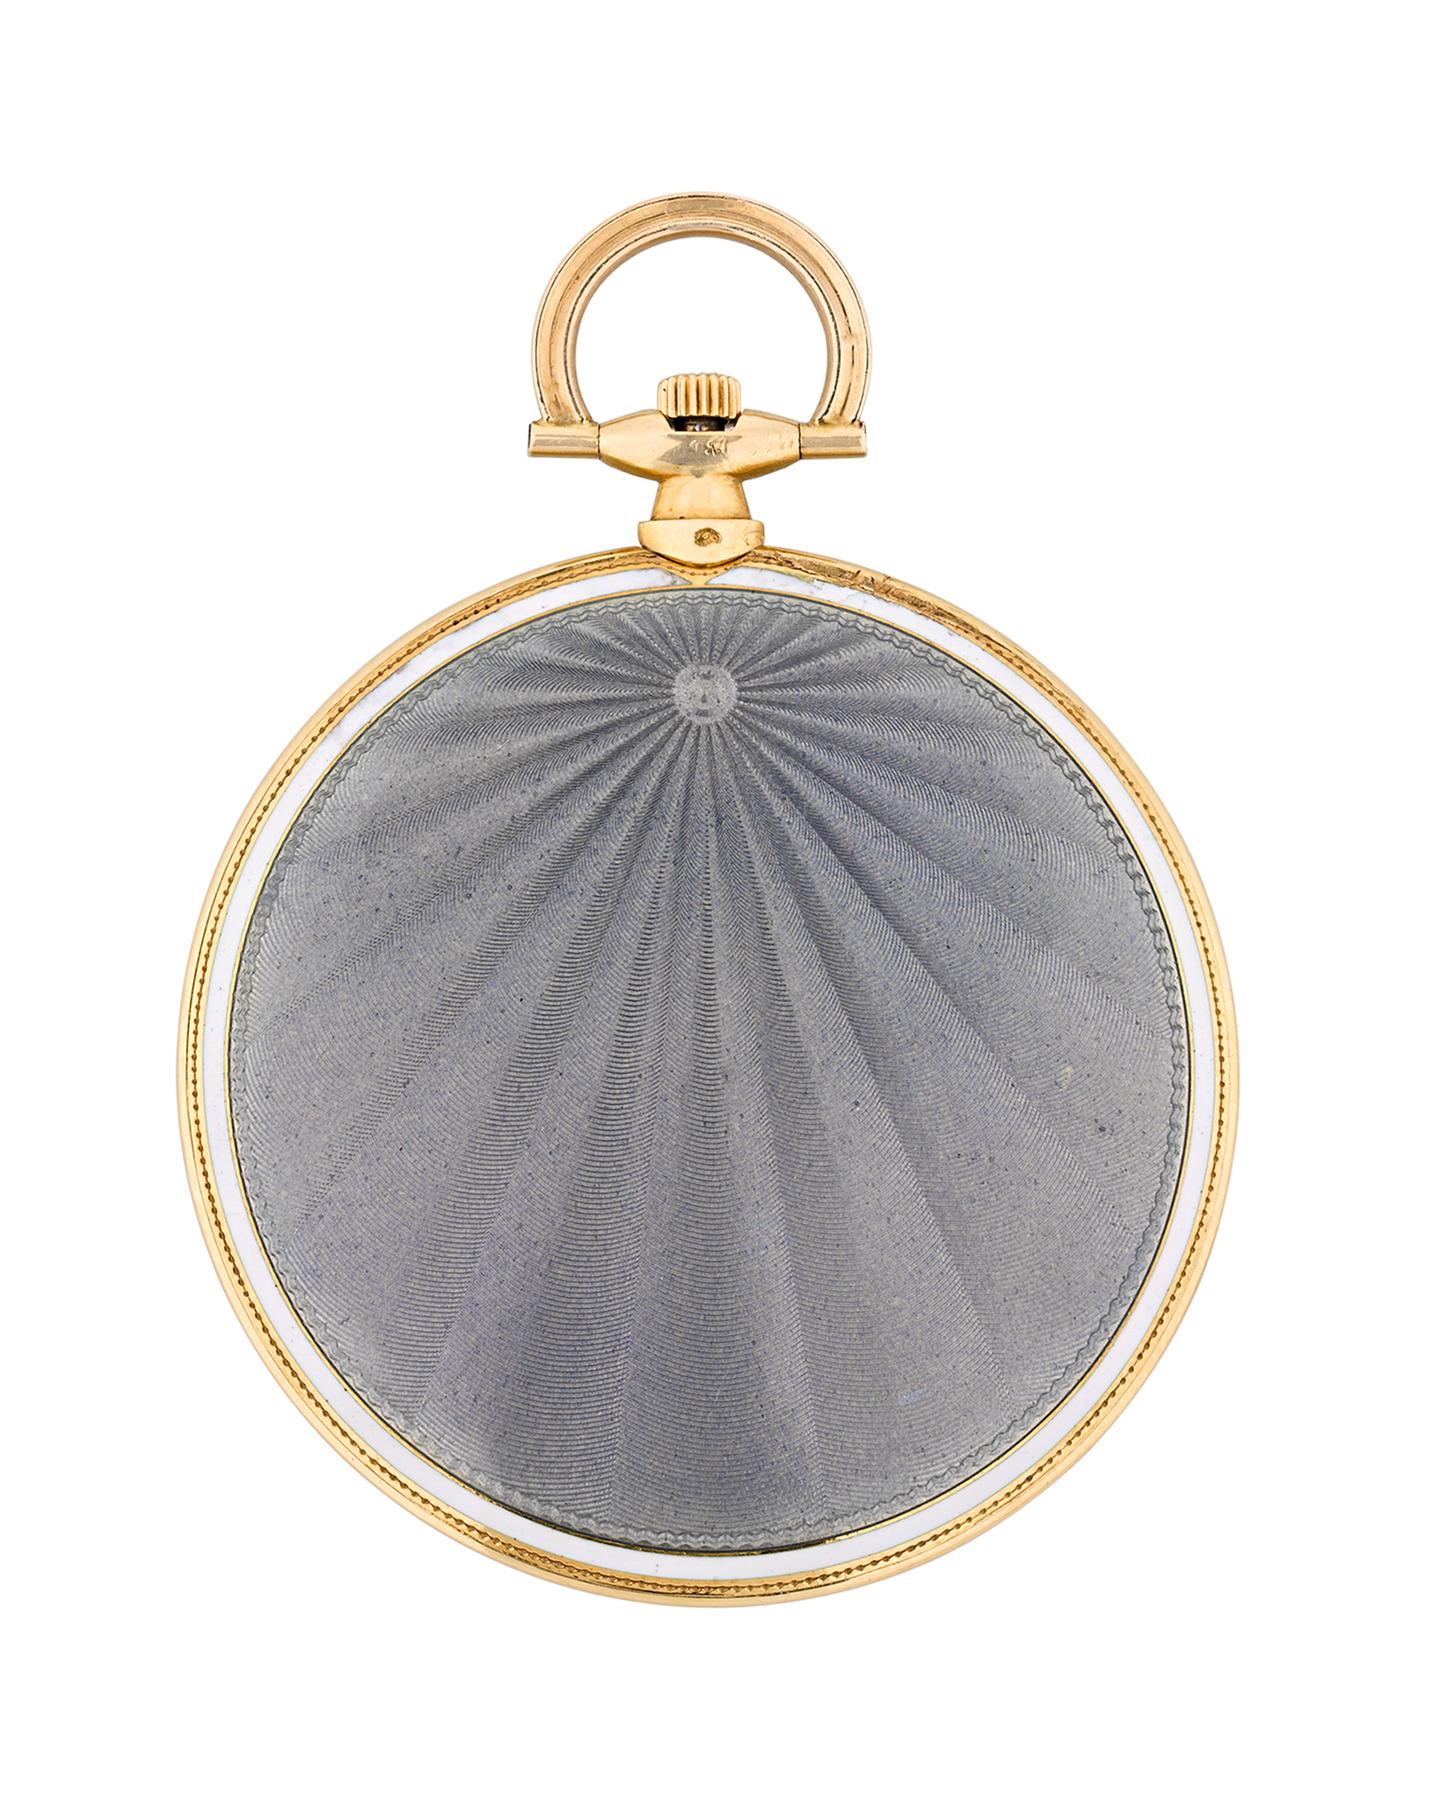 Diese Taschenuhr im klassischen Art-déco-Design wurde von der berühmten Firma Cartier hergestellt. Der in einem offenen 18-karätigen Goldgehäuse untergebrachte Zeitmesser besticht durch sein schlankes Design und die hellblaue Guilloche-Emaillierung